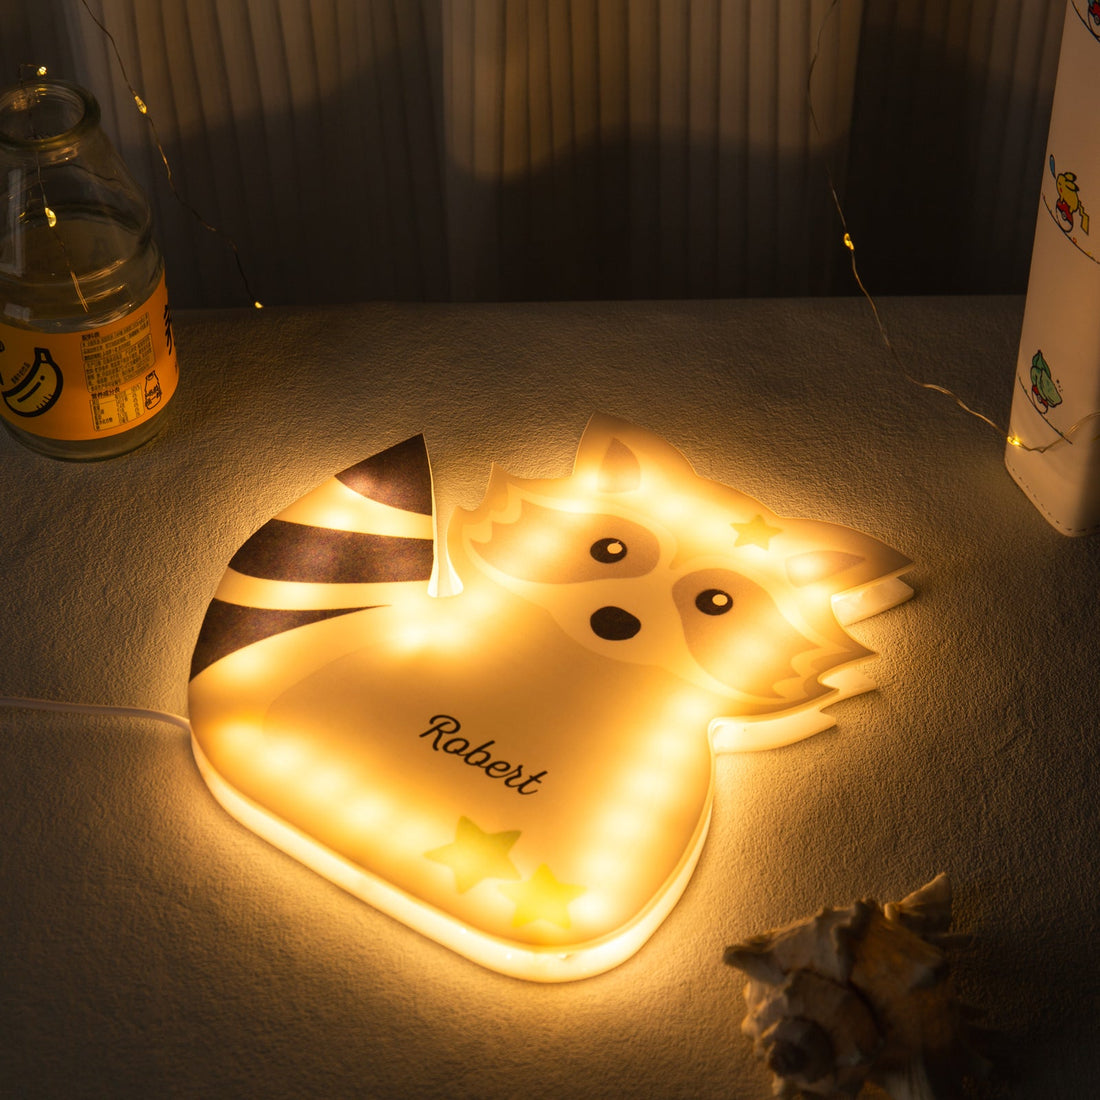 Veilleuse LED Personnalisée Lampe Pour Enfants Raton Laveur Avec Prénom